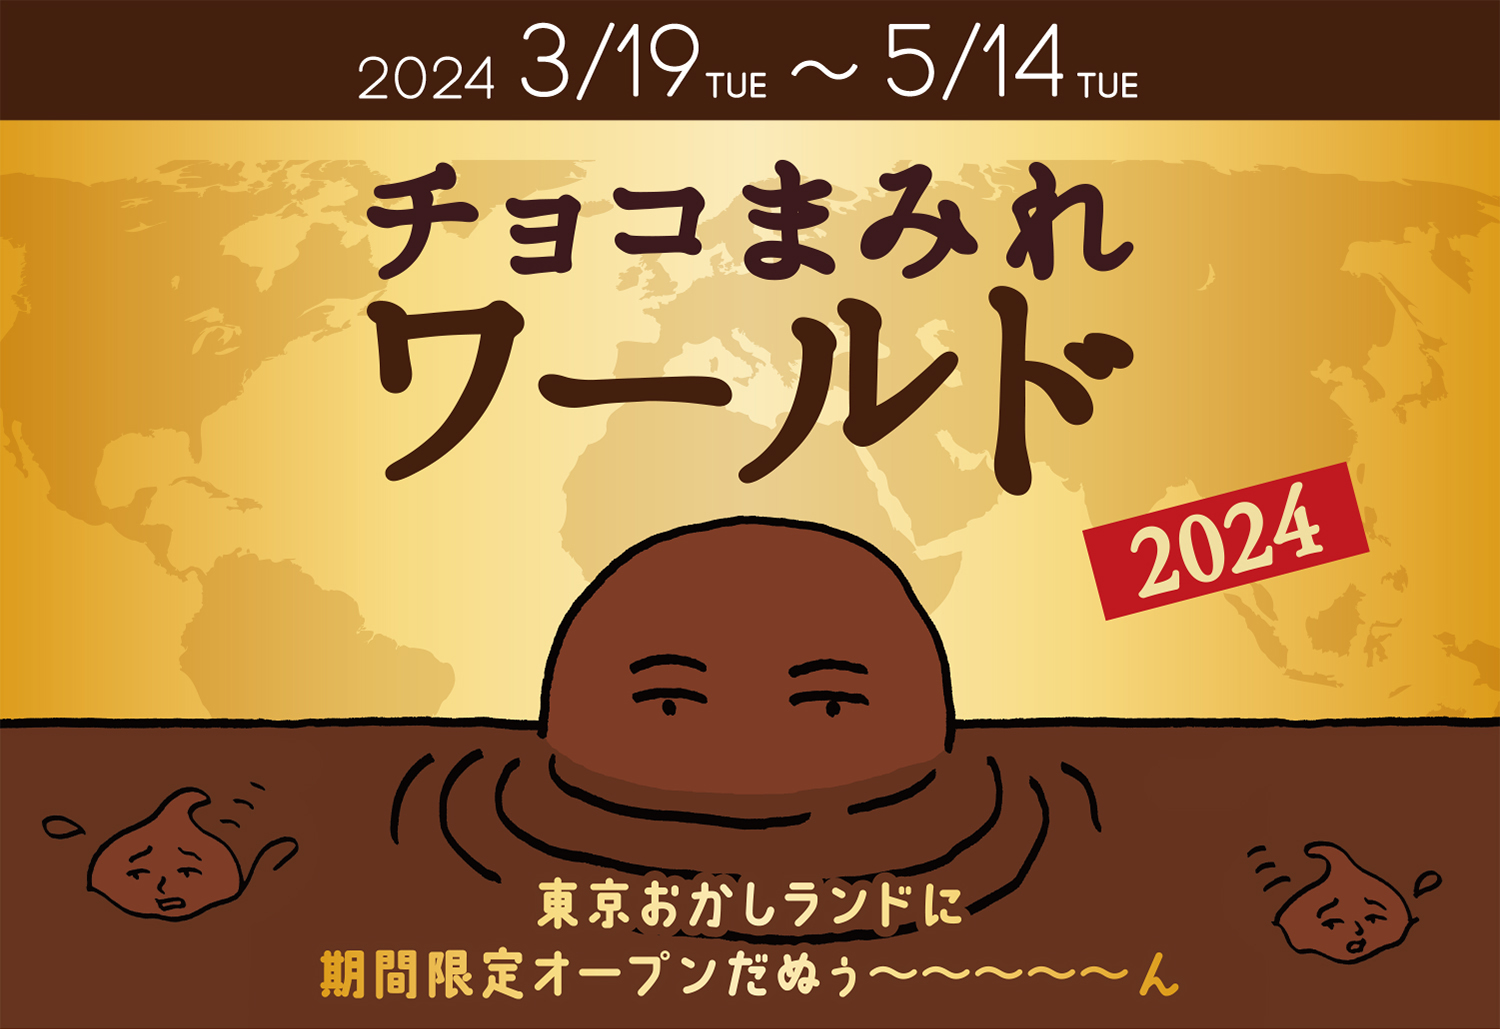 2024 3/19 TUE ~ 5/14 TUE チョコまみれワールド 2024 東京おかしランドに期間限定オープンだぬぅ～～～～～ん